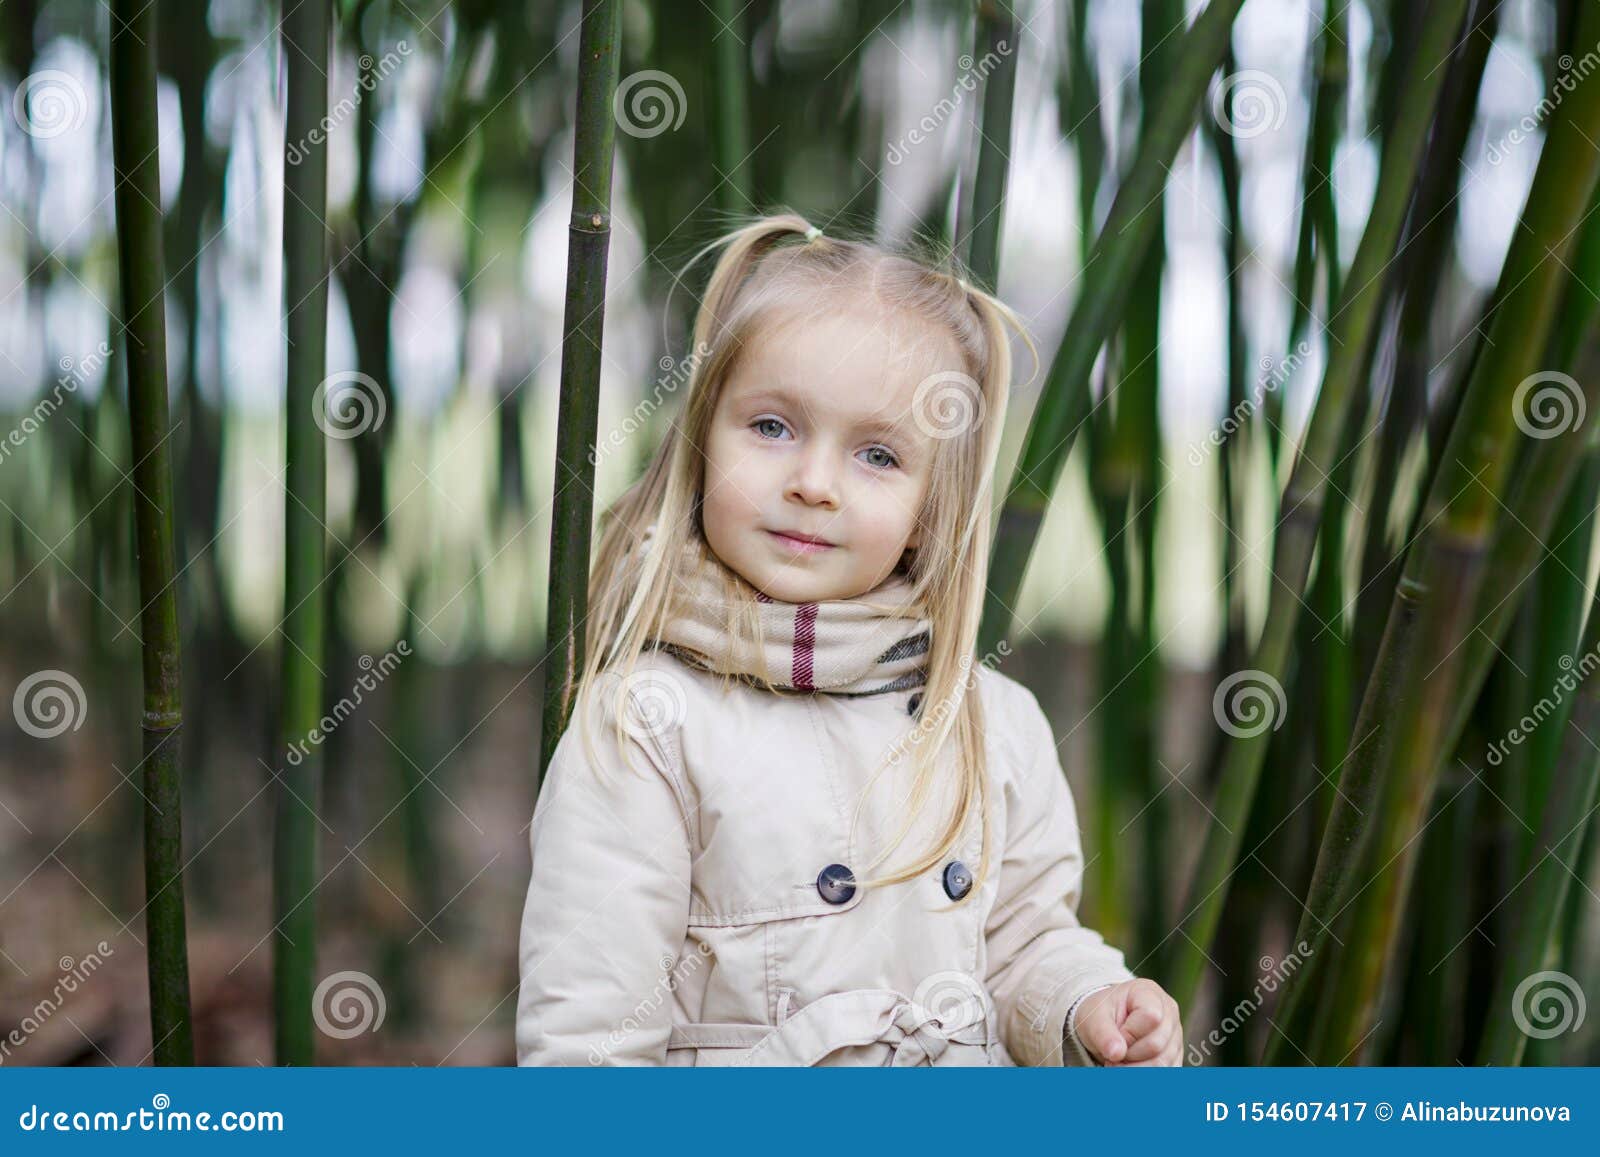 Linda Menina De Cabelos Loiros Em Uma Floresta De Bambu E Tremendo